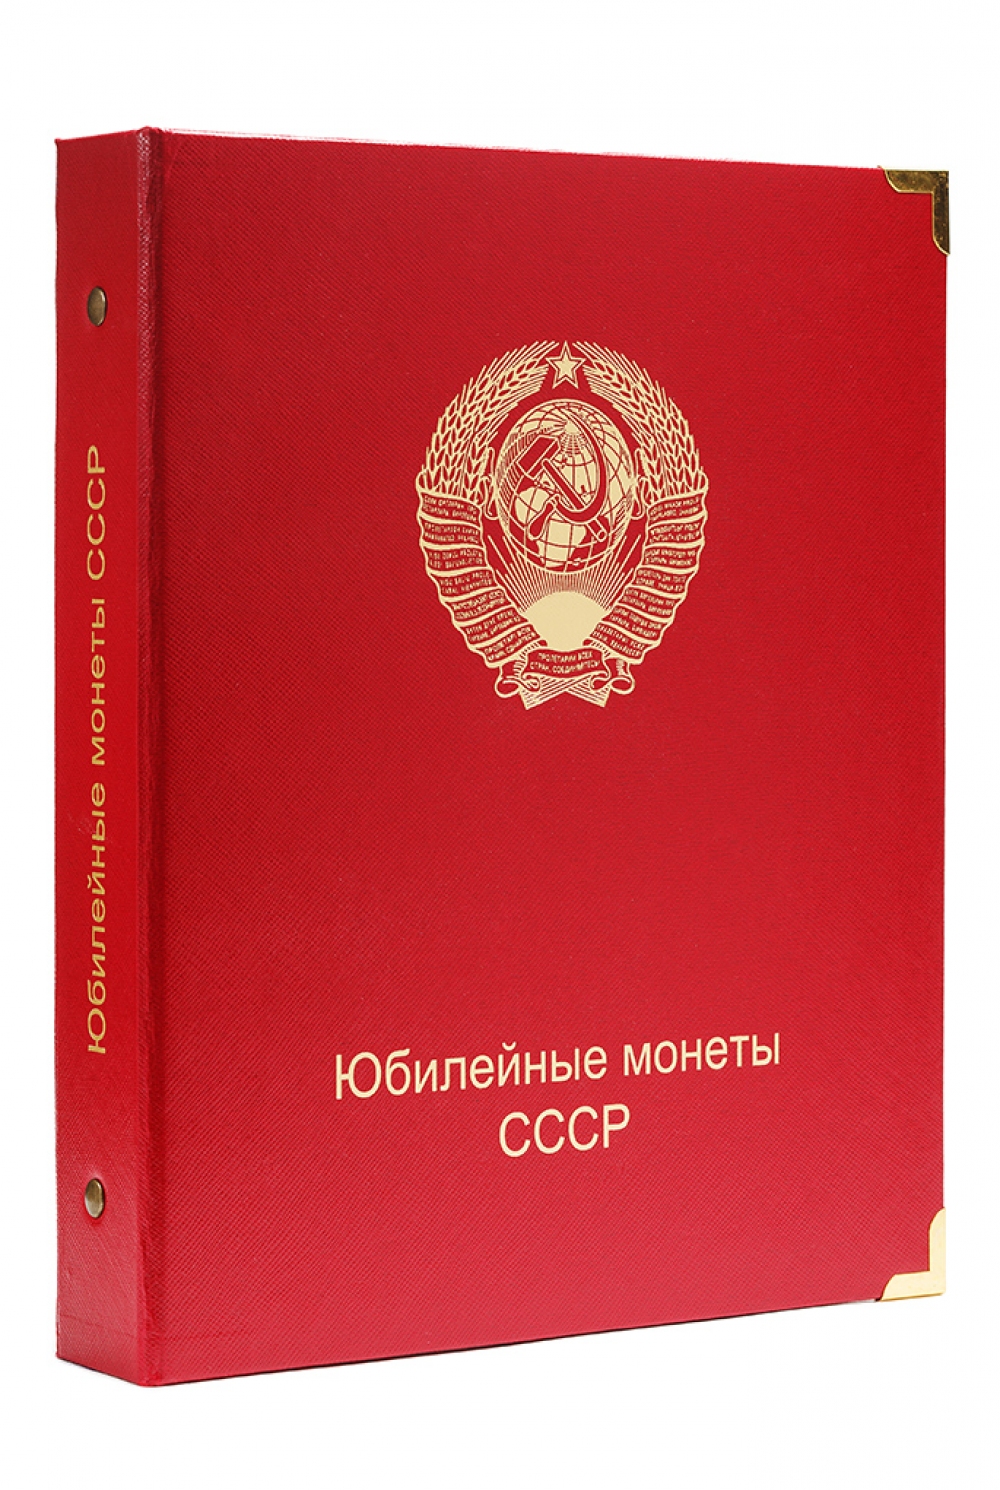 Обложка для Юбилейных монет СССР (К03) - 166